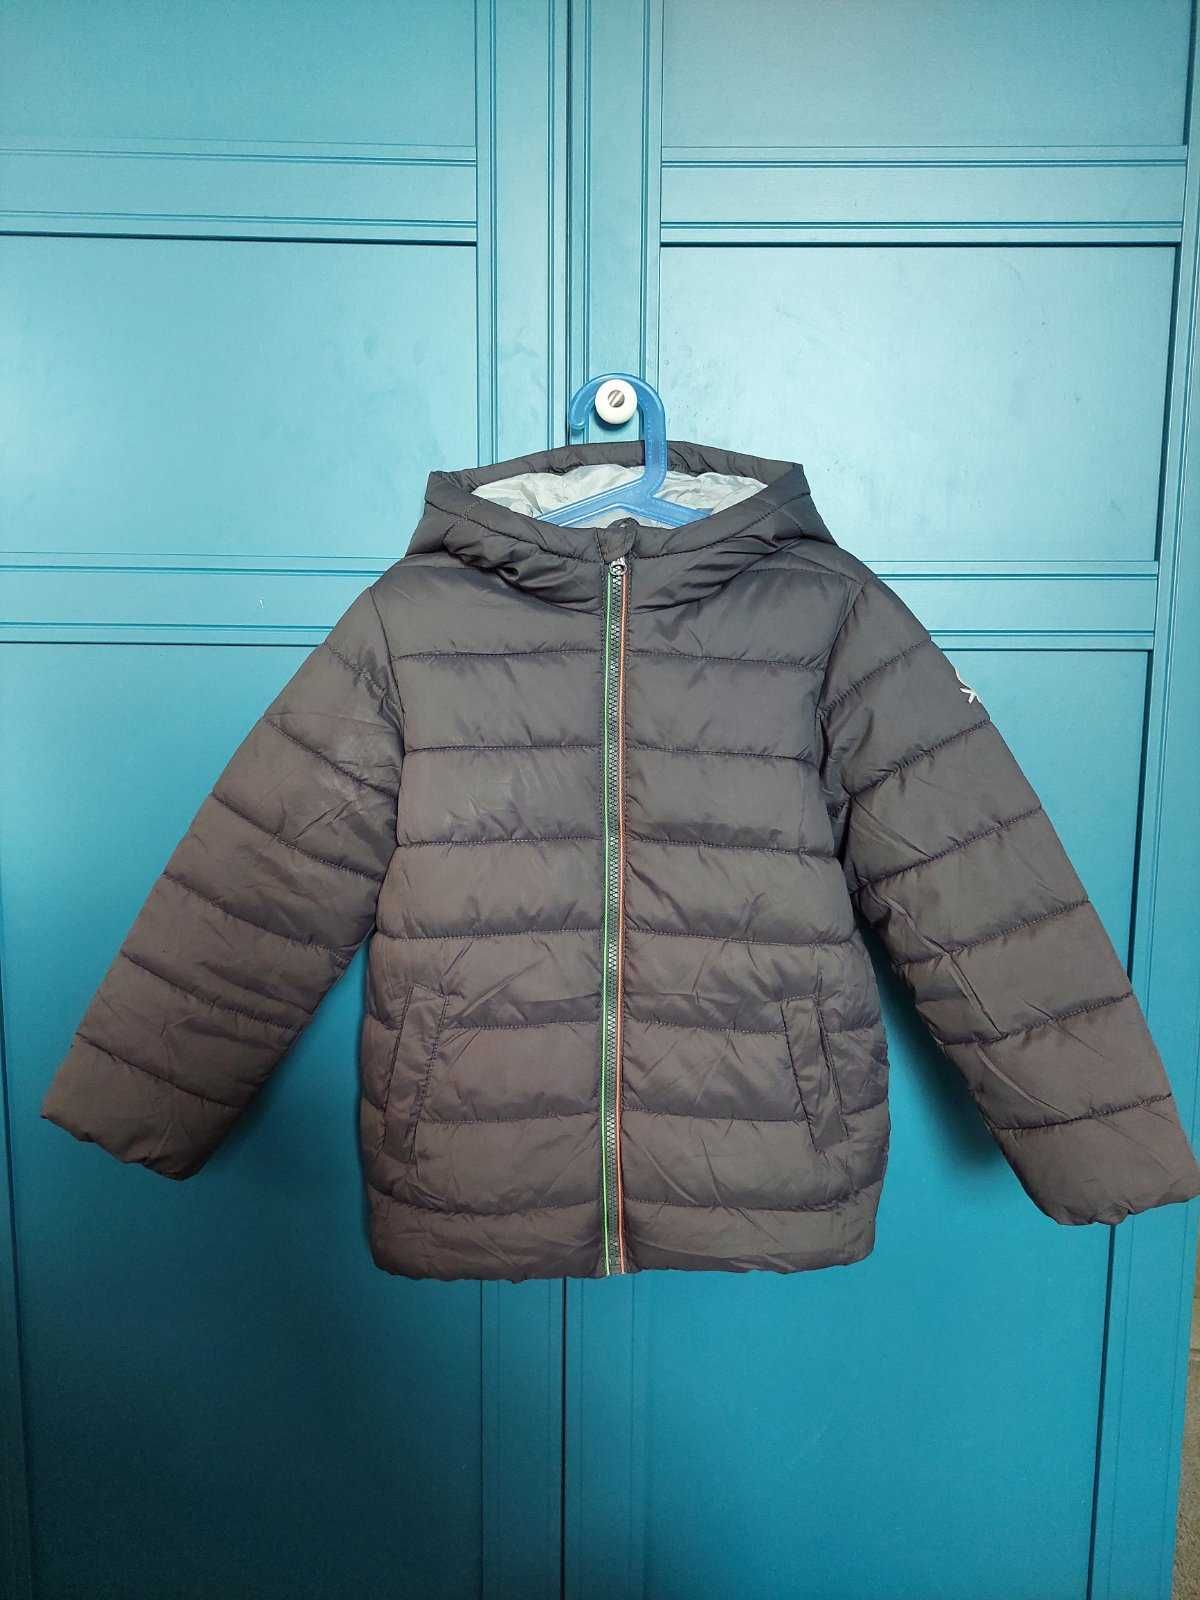 Теплая куртка Benetton для мальчика 6-7 лет.